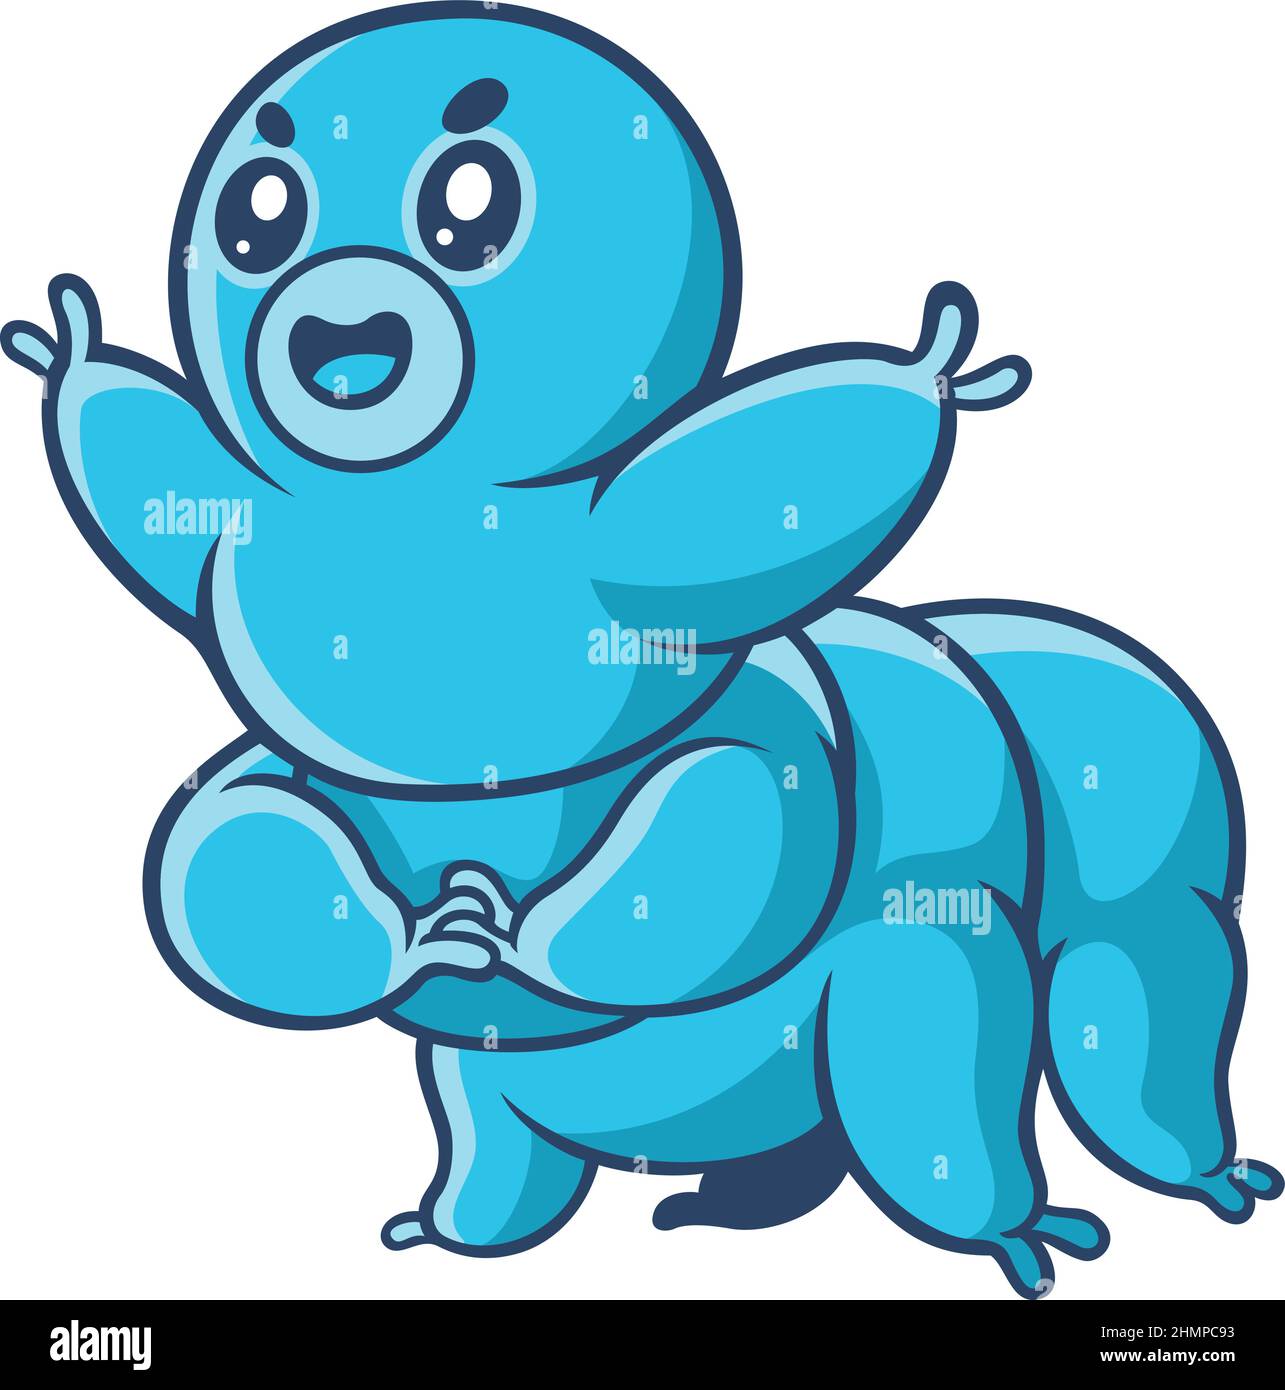 Cute Tardigrade (Water Bear) Cartoon Character Design Stock Vector